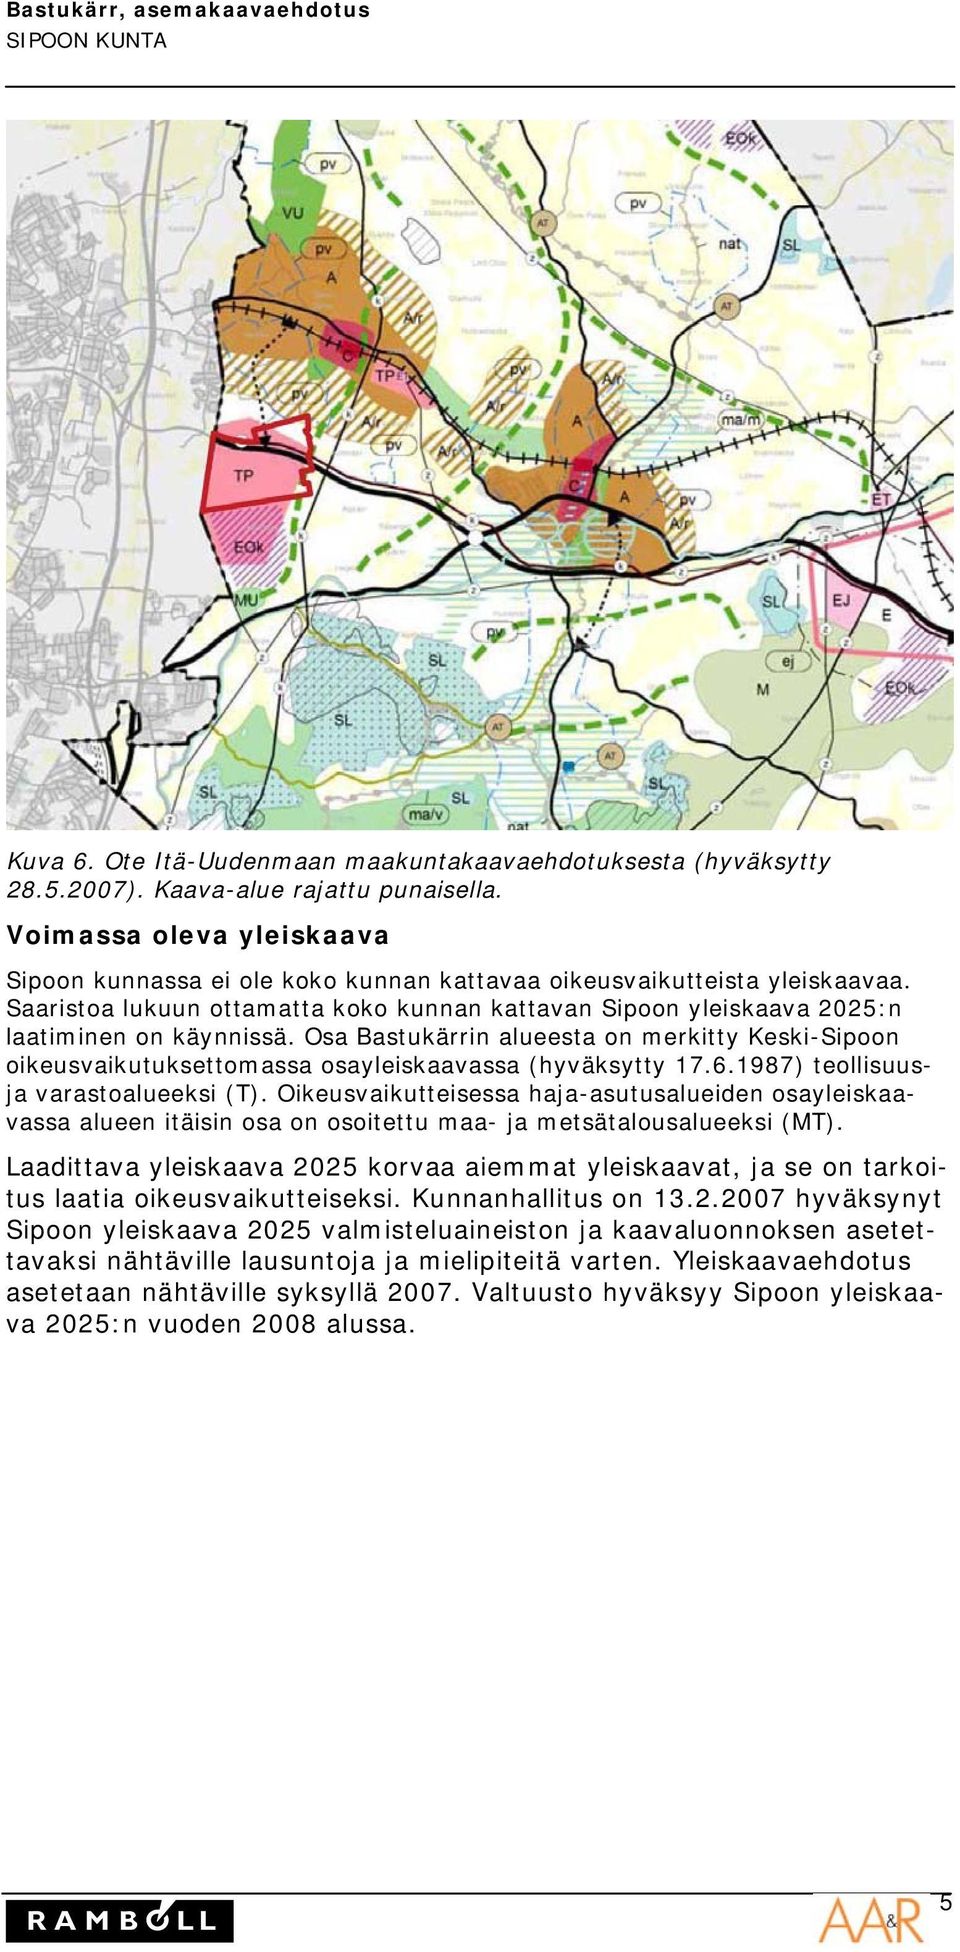 Osa Bastukärrin alueesta on merkitty Keski-Sipoon oikeusvaikutuksettomassa osayleiskaavassa (hyväksytty 17.6.1987) teollisuusja varastoalueeksi (T).